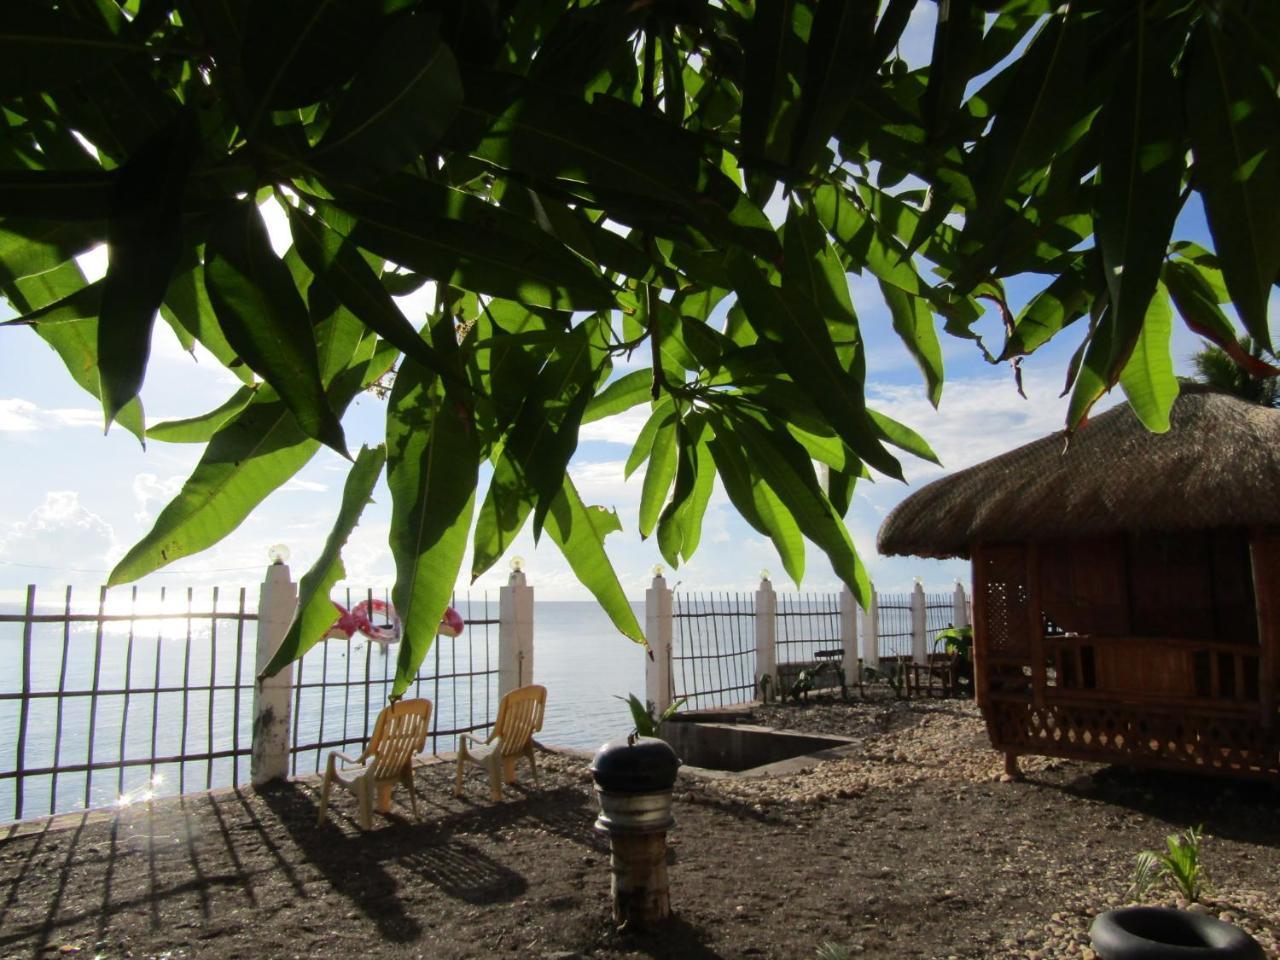 Bamboo Village On The Beach Catmon ภายนอก รูปภาพ